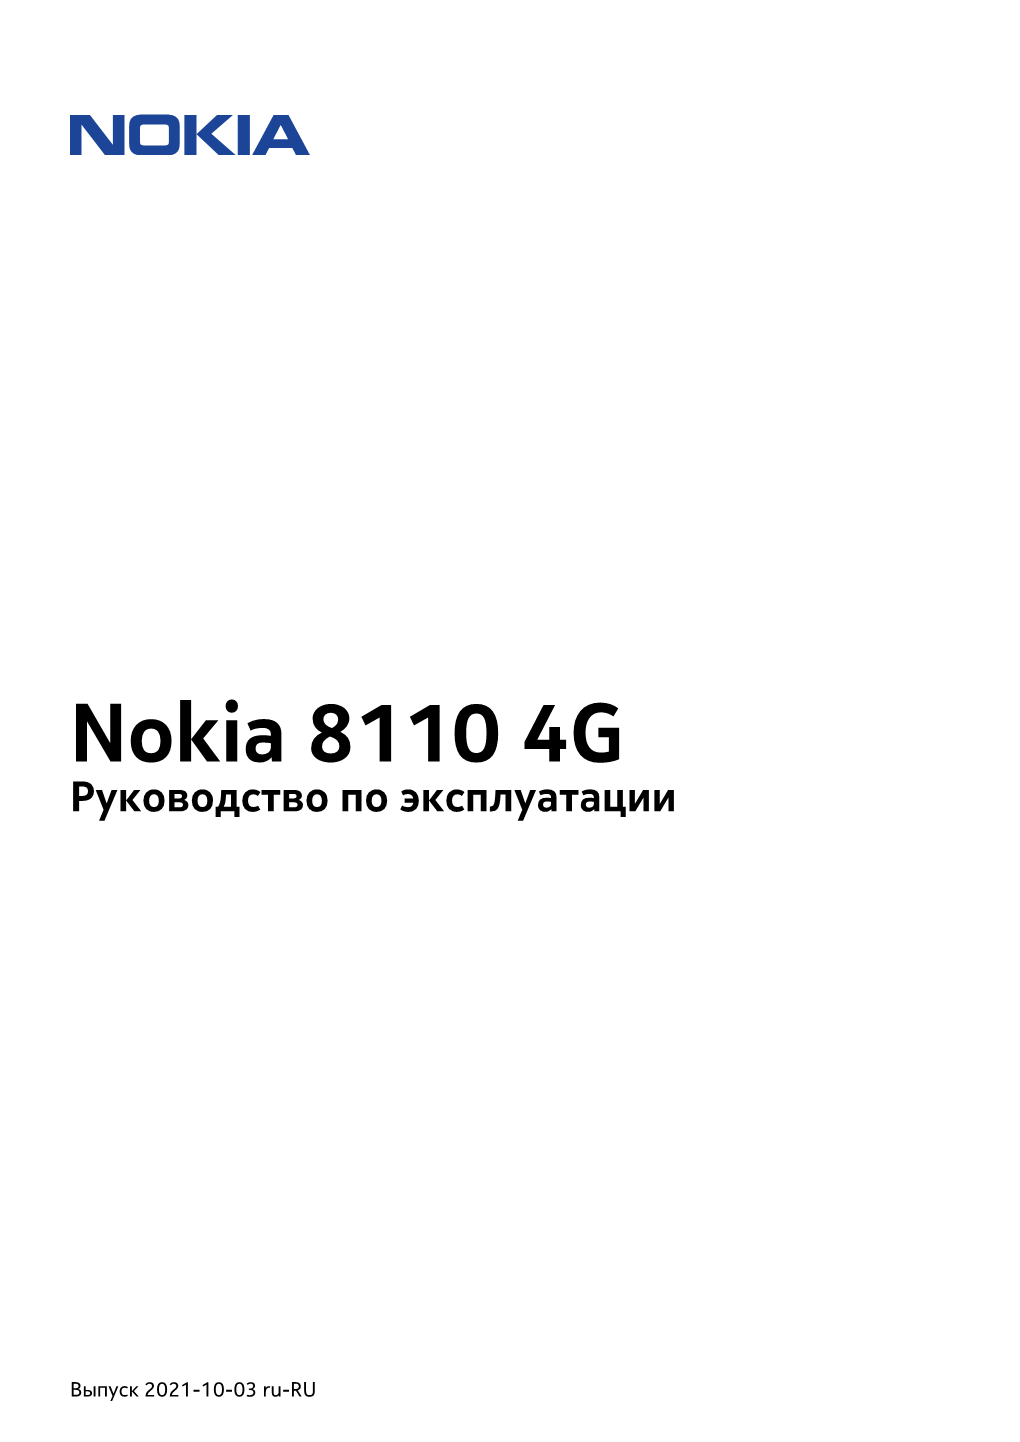 Nokia 8110 4G Руководство По Эксплуатации